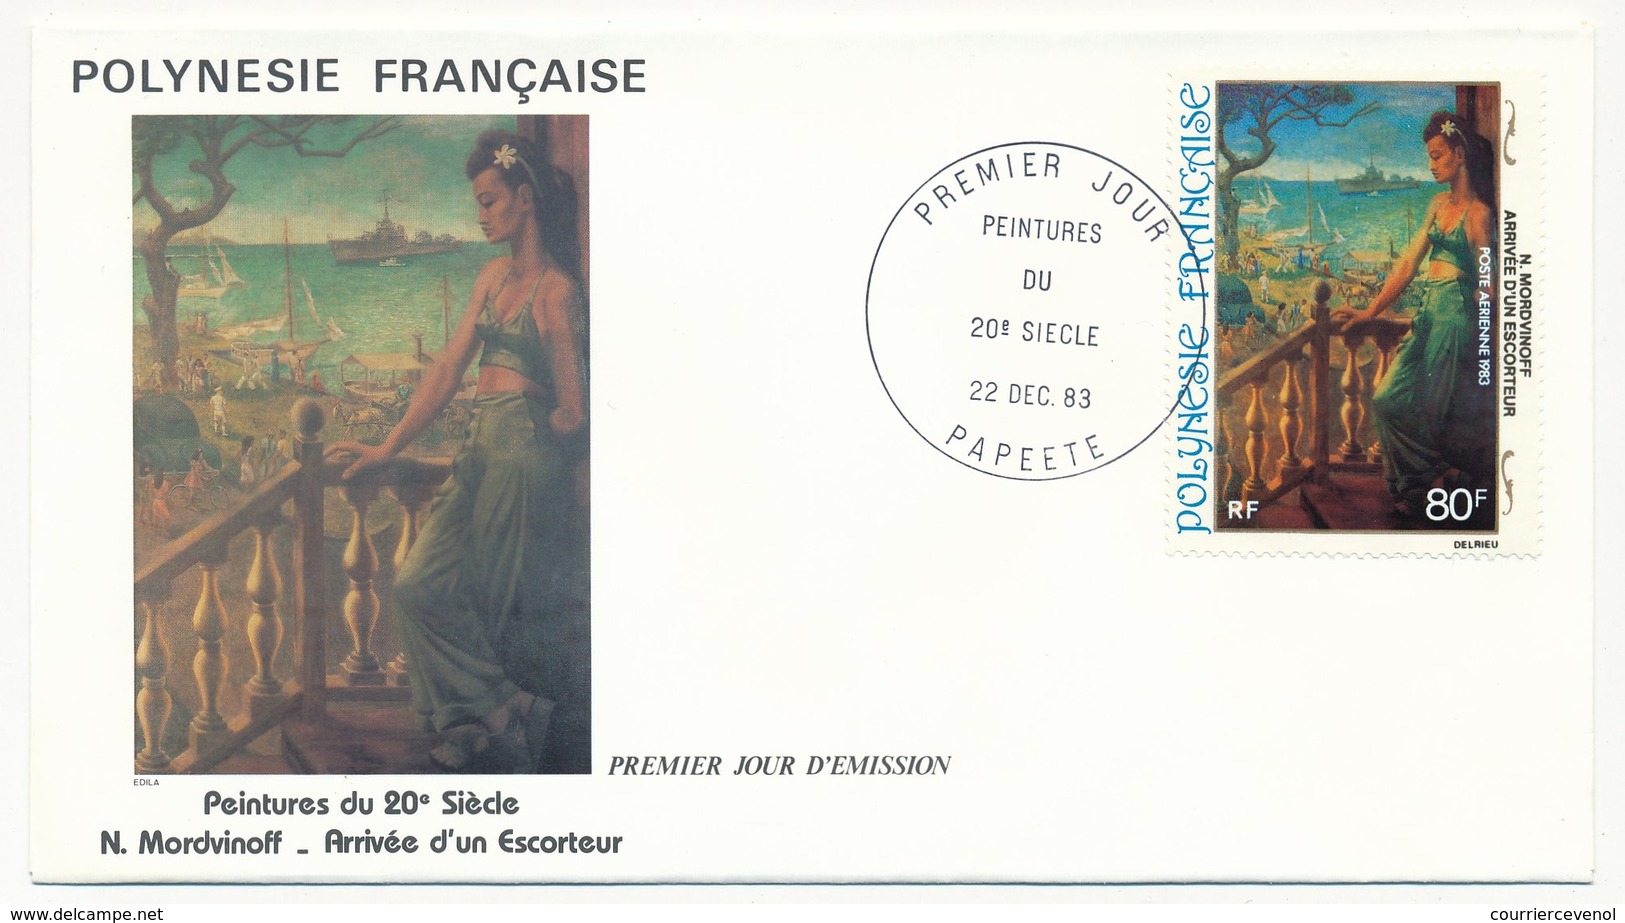 POLYNESIE FRANCAISE - 4 FDC - Peintures Du 20eme Siècle - 22 Dec 1983 - Papeete - FDC